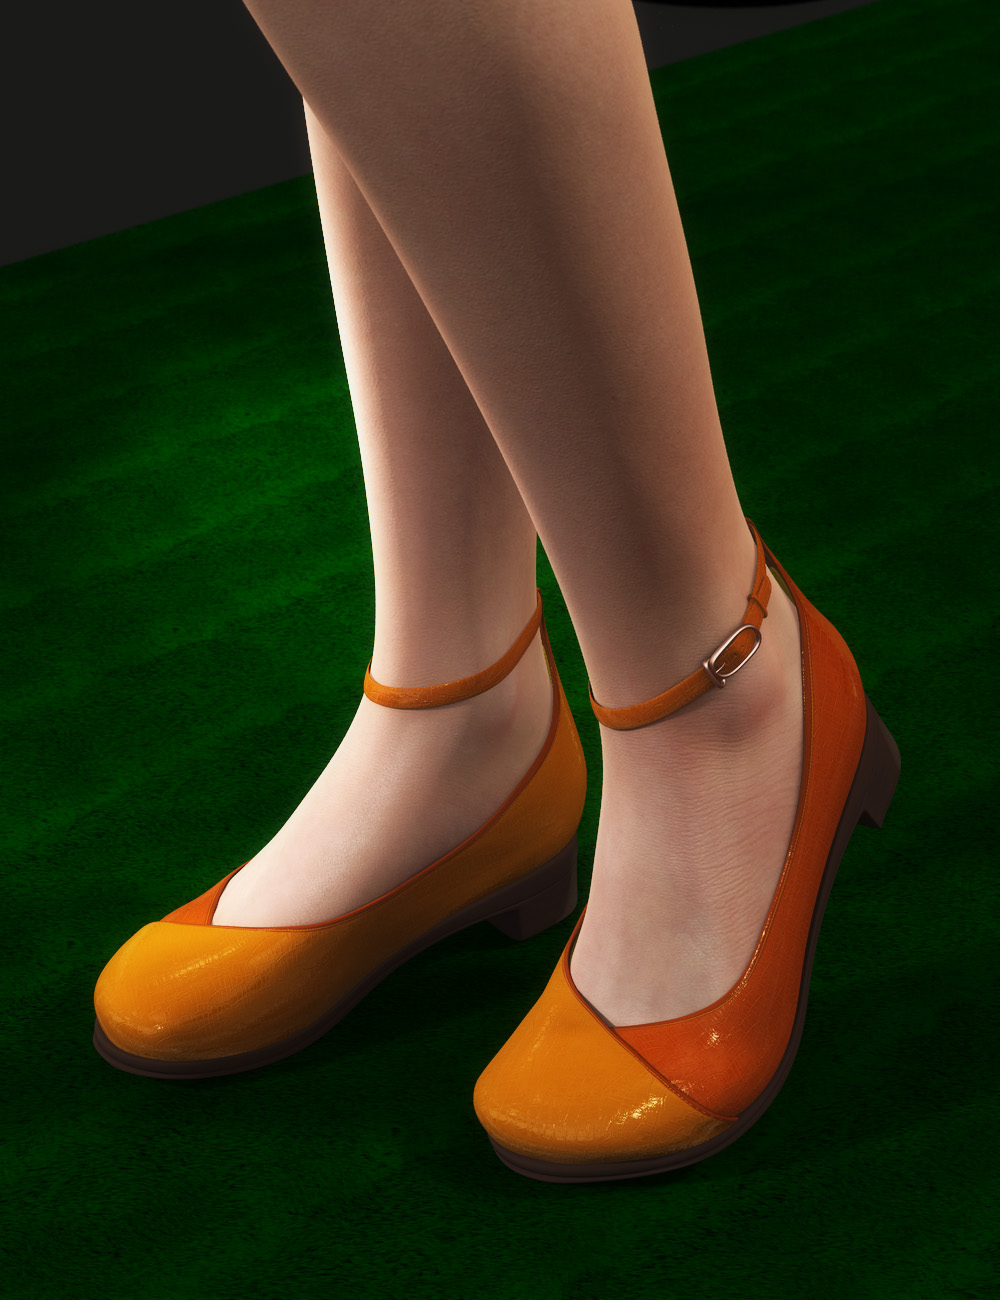 Low-heel Pumps for Genesis 2 Female(s) by: tentman, 3D Models by Daz 3D